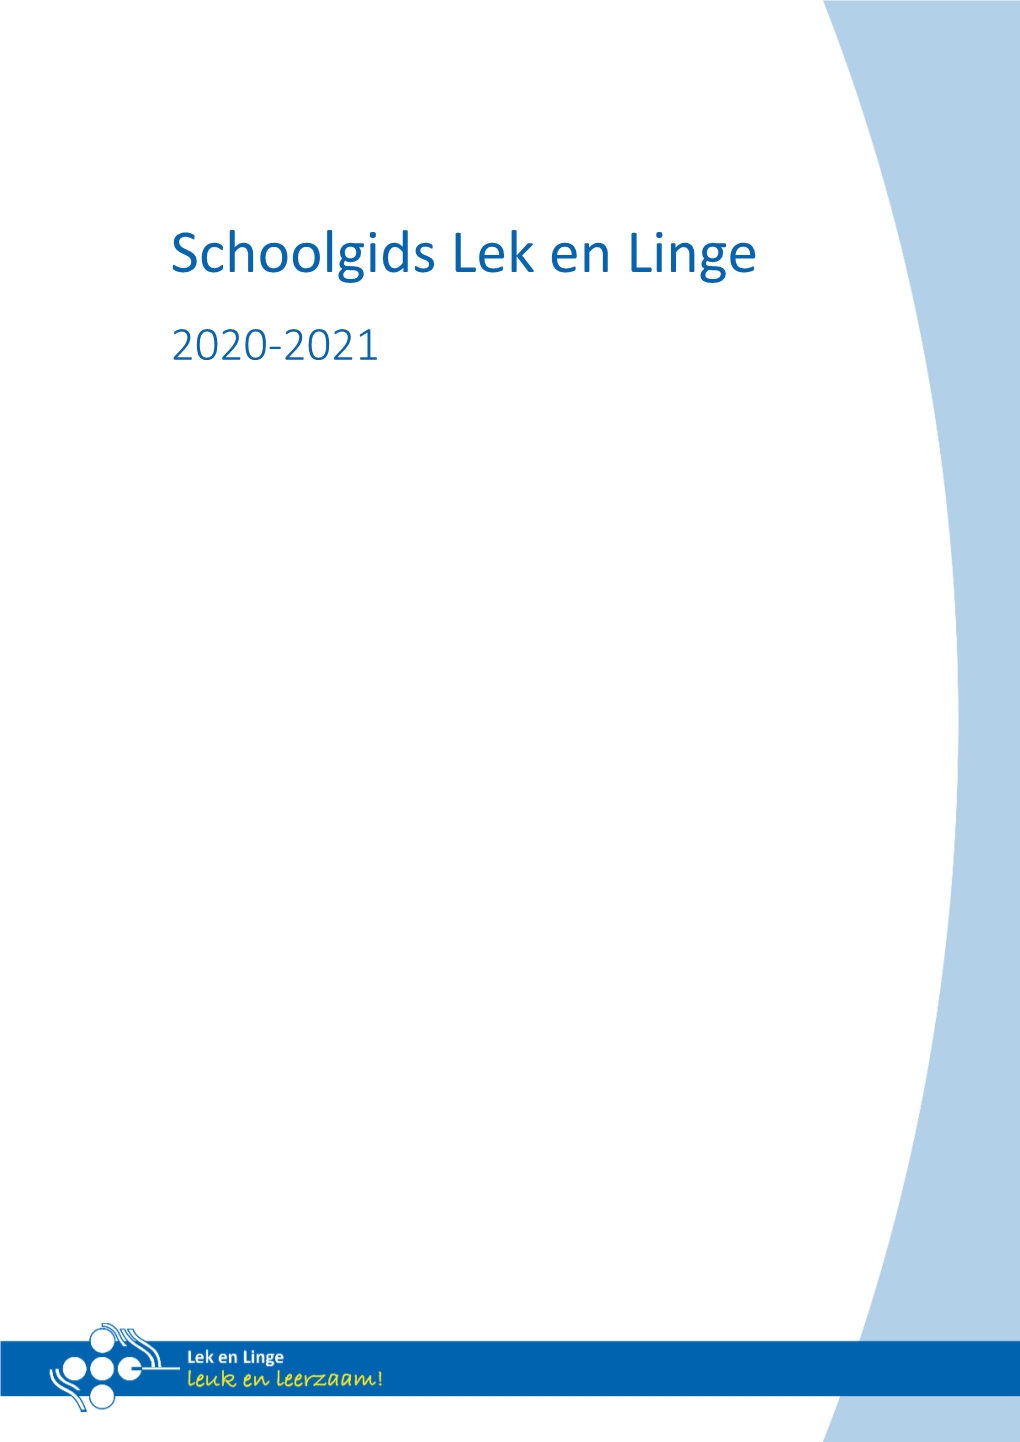 Schoolgids Lek En Linge 2020-2021